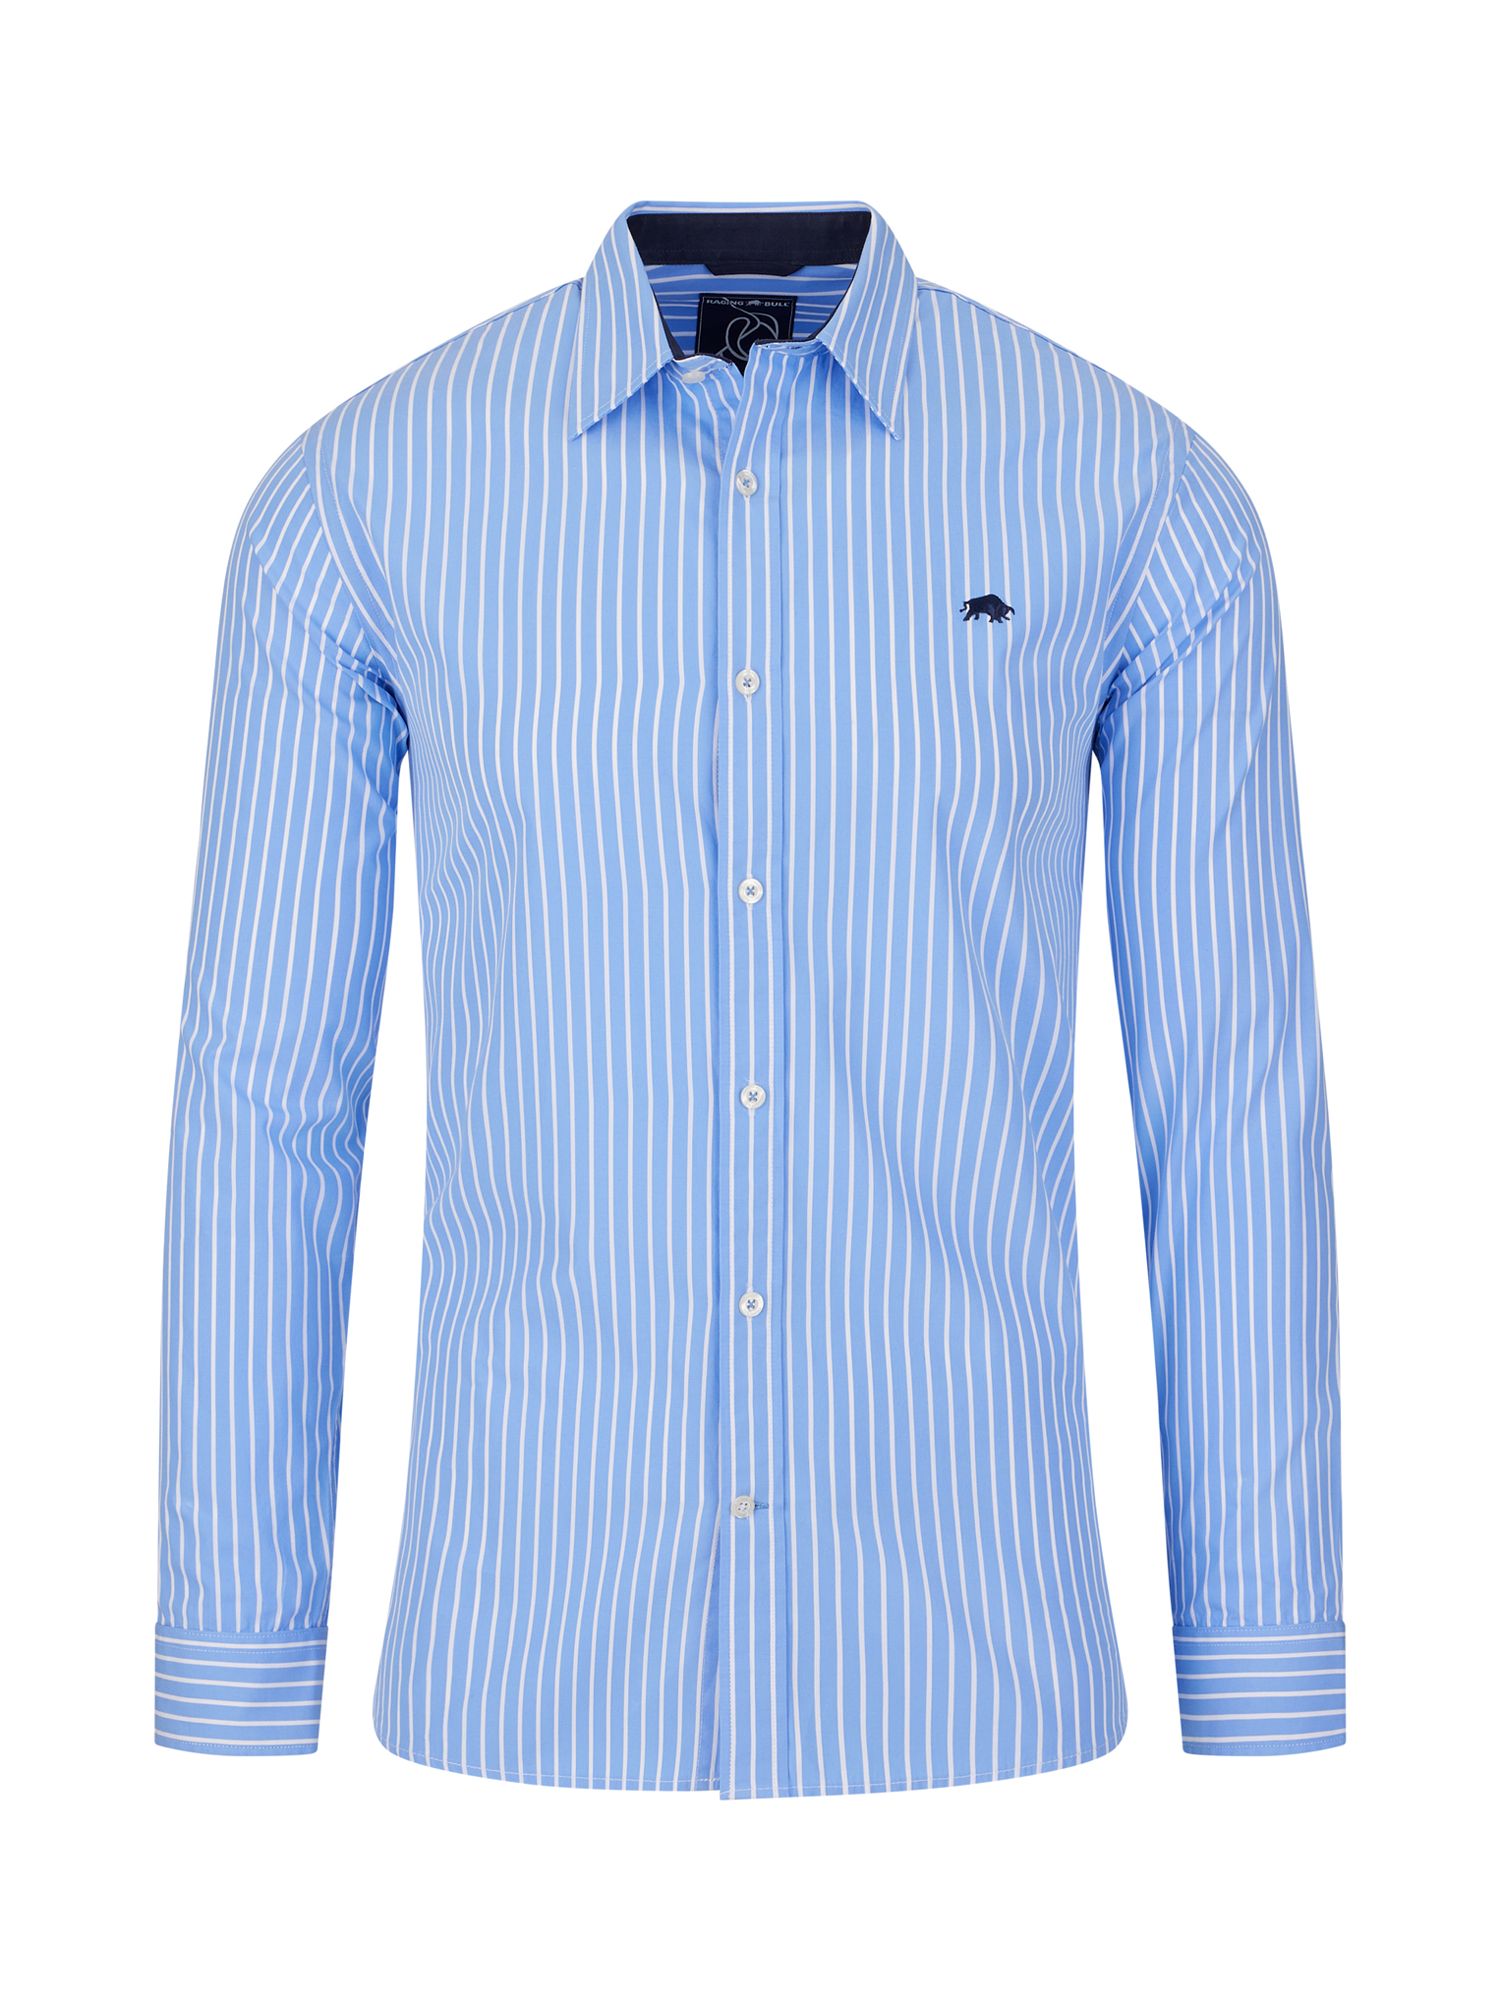 Buy Raging Bull Classic Long Sleeve Stripe Shirt, Blue/White Online at johnlewis.com